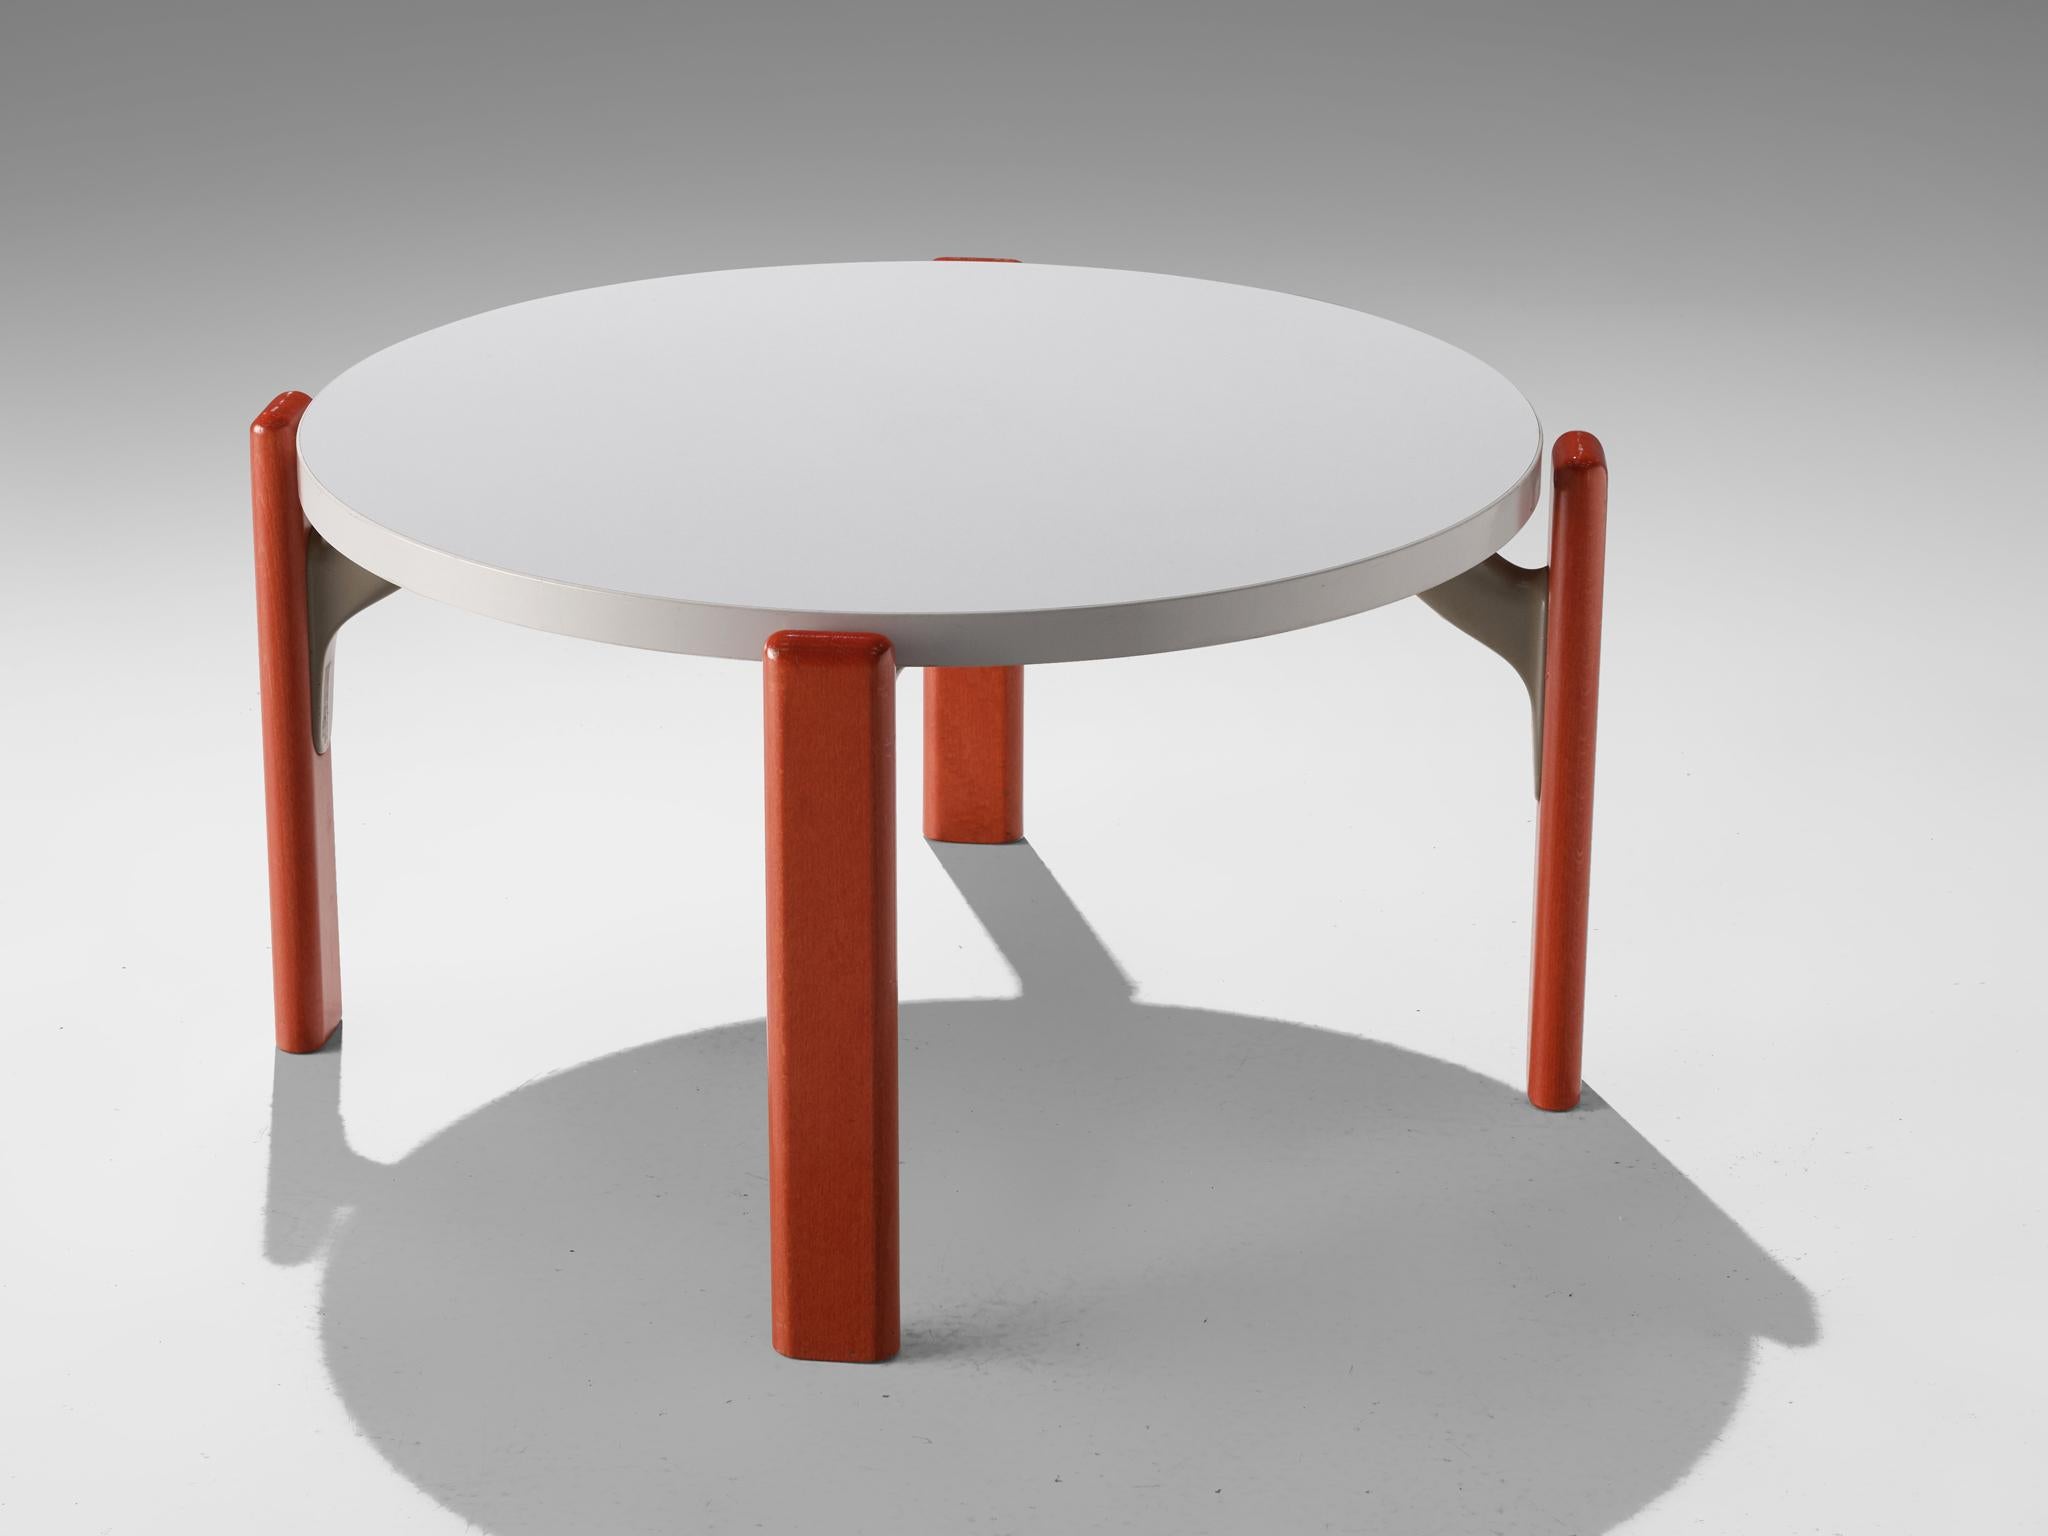 Bruno Rey für Dietiker, Couchtisch, Sperrholz, Schweiz, 1970er Jahre

Dieser Couchtisch besteht aus vier rot lackierten Beinen und einer runden weißen Tischplatte. Eine graue Verbindung hält die Beine und den Deckel zusammen. Eine Besonderheit ist